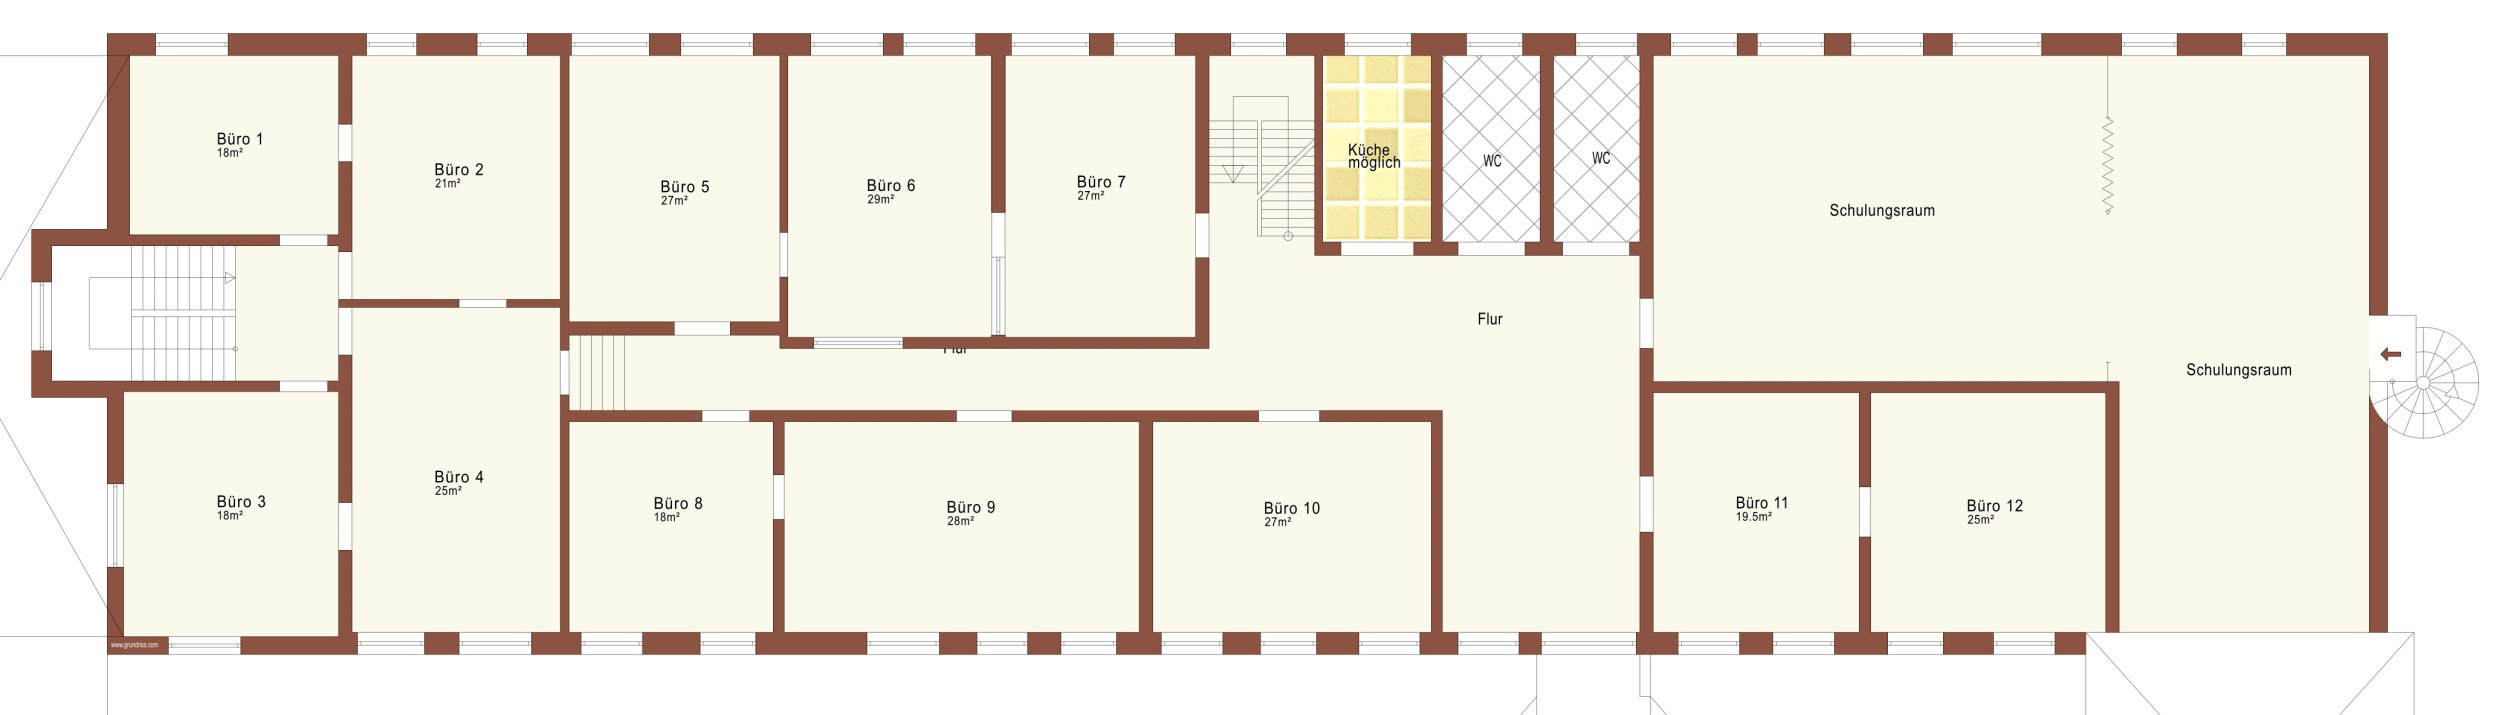 Grundriss Obergeschoss Mietbeispiel ca. 85 m² (mit Klimaanlage) Kaltmiete/Monat 340,00 zzgl. 19% MwSt.* + Nebenkosten Individuelle Erweiterungen möglich. * Inkl.